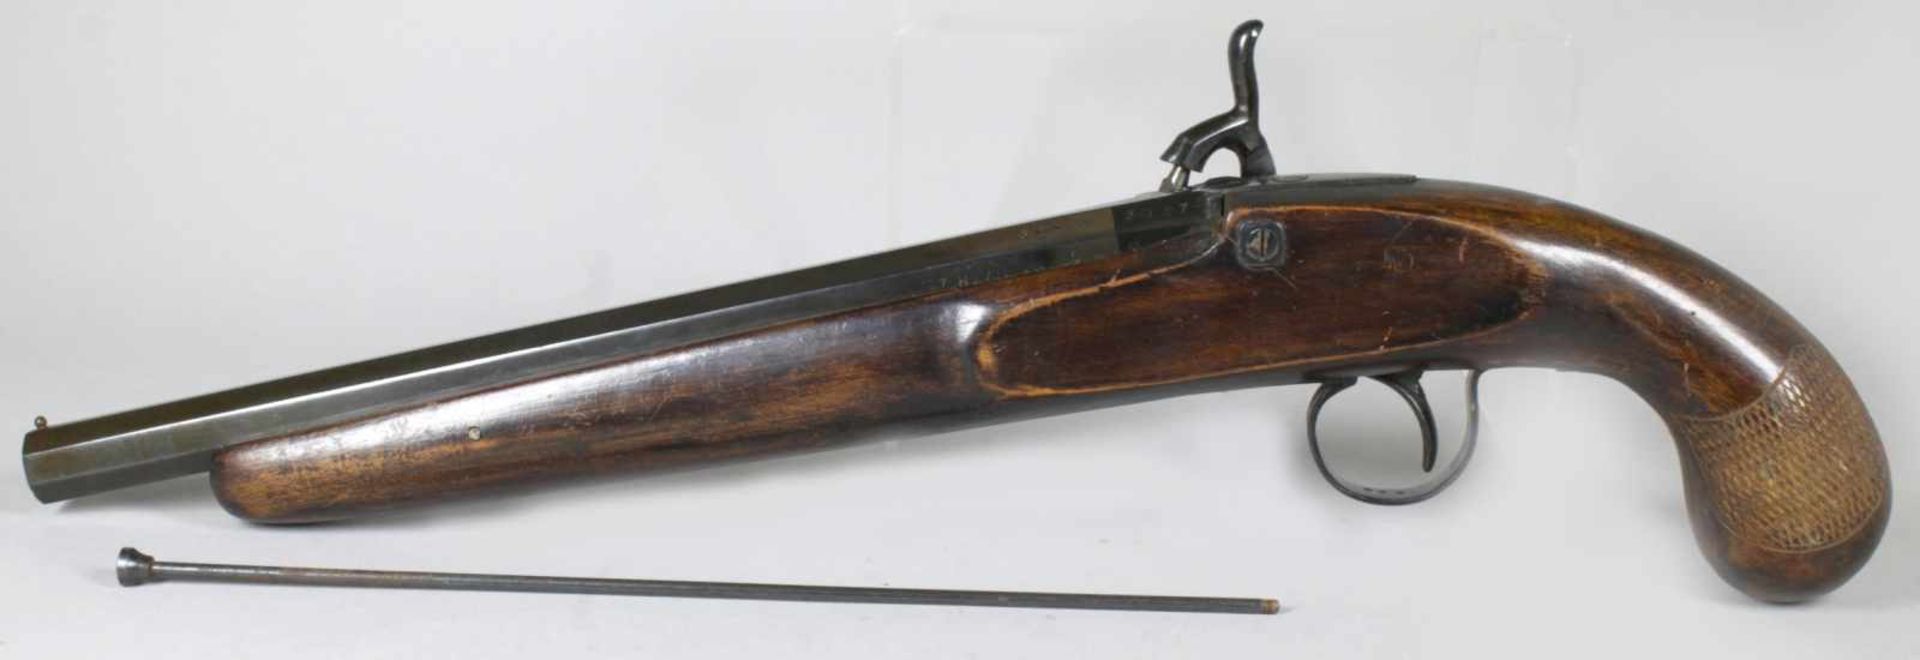 Perkussionspistole, um 1800, brünierter Eisenlauf, -schloß, -beschläge und -abzugshahnsowie Kim - Bild 2 aus 8